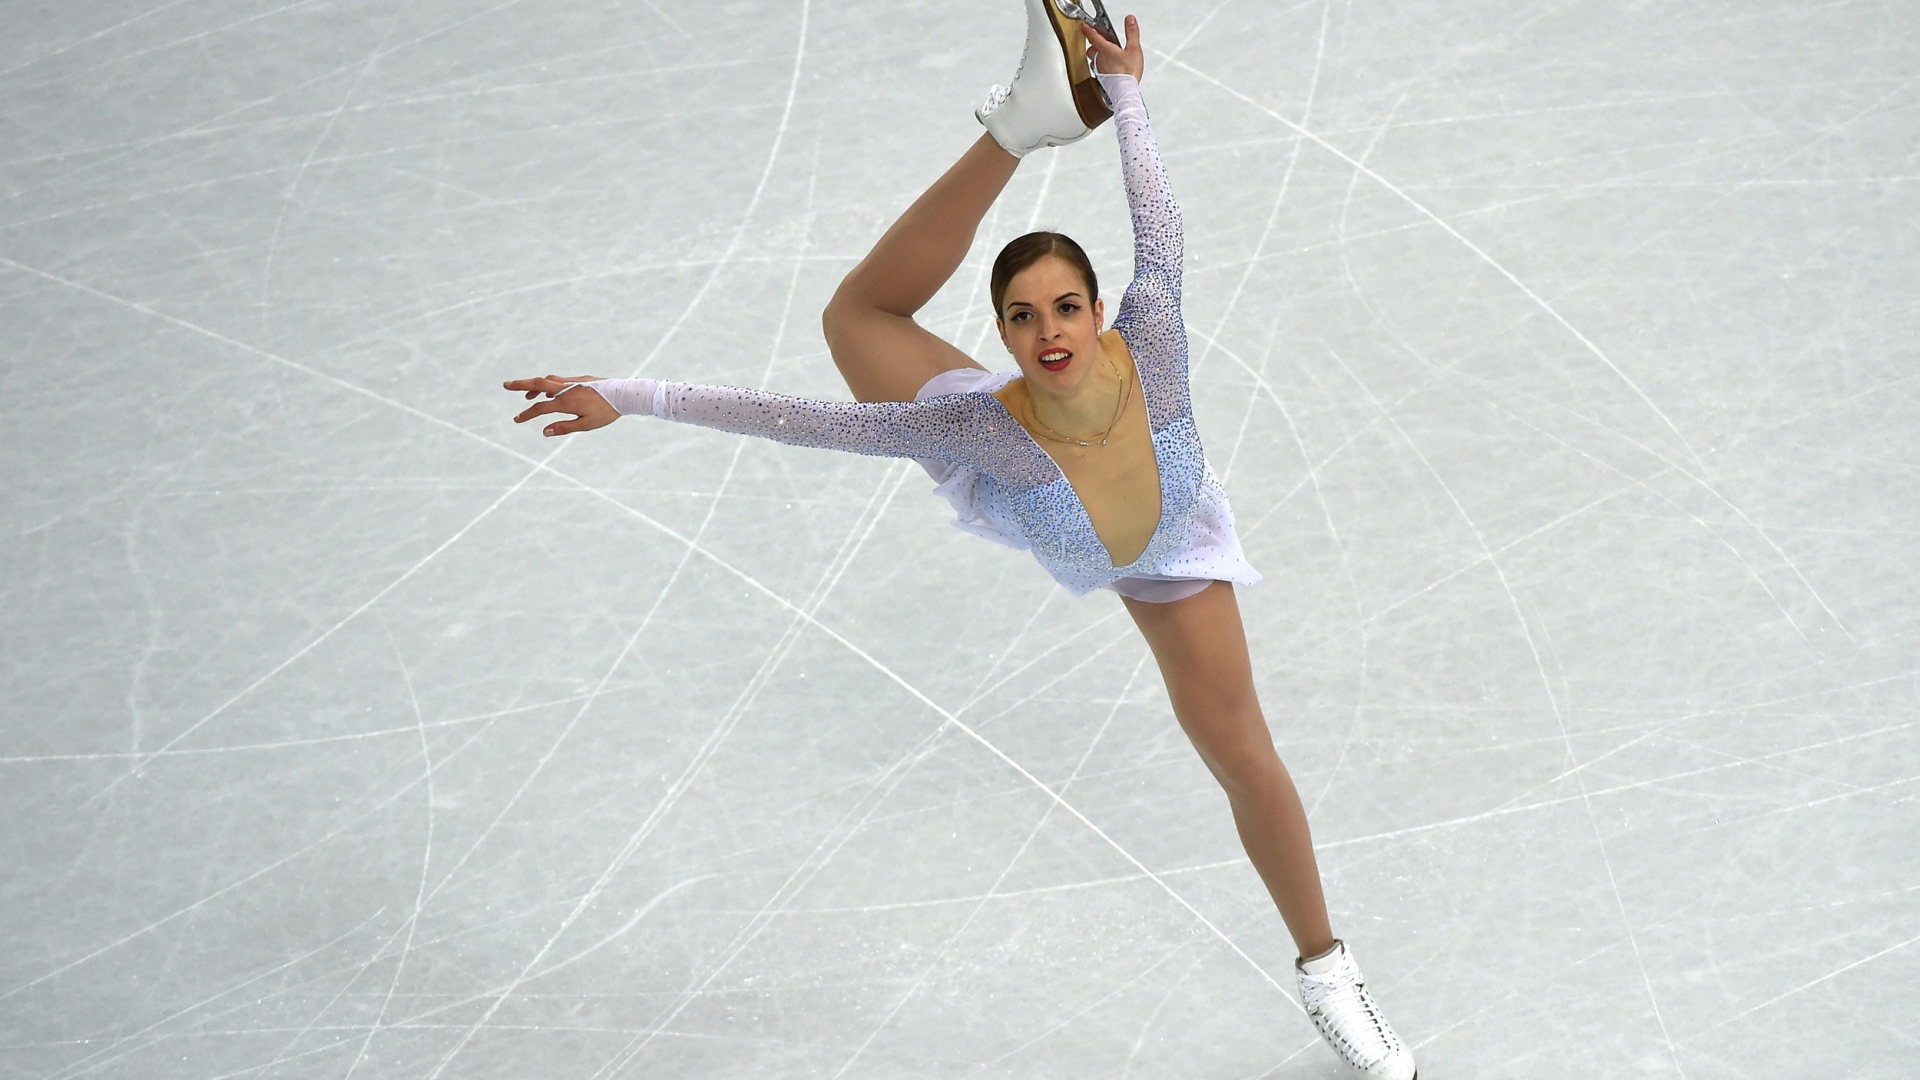 Italian skater Carolina Kostner bronze medal winner in Sochi